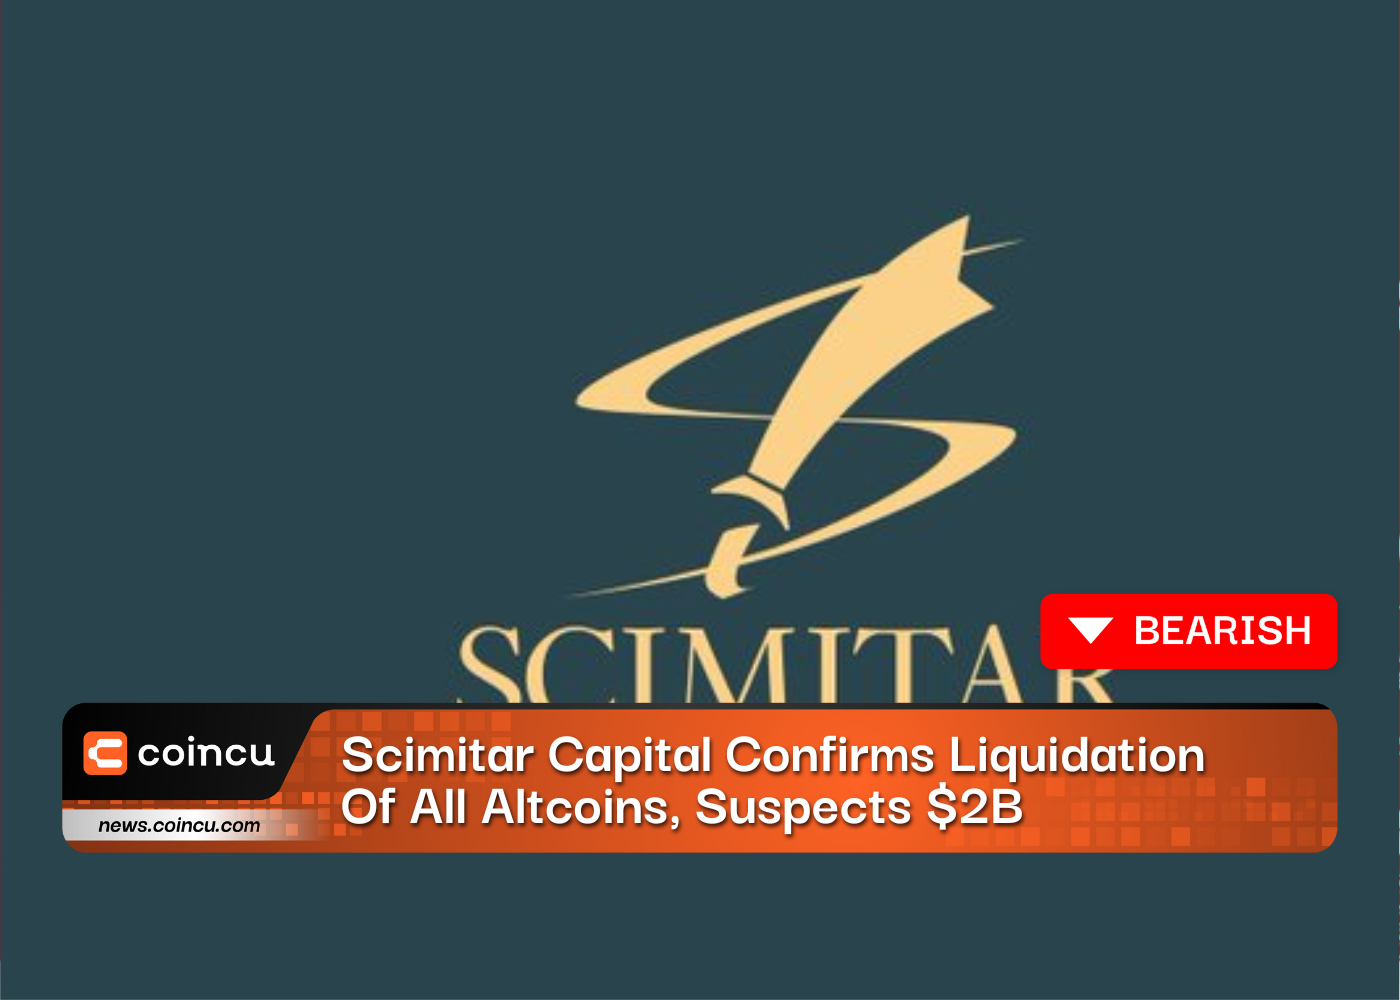 Scimitar Capital bestätigt die Liquidation aller Altcoins und vermutet einen Markteinbruch in Höhe von 2 Milliarden US-Dollar